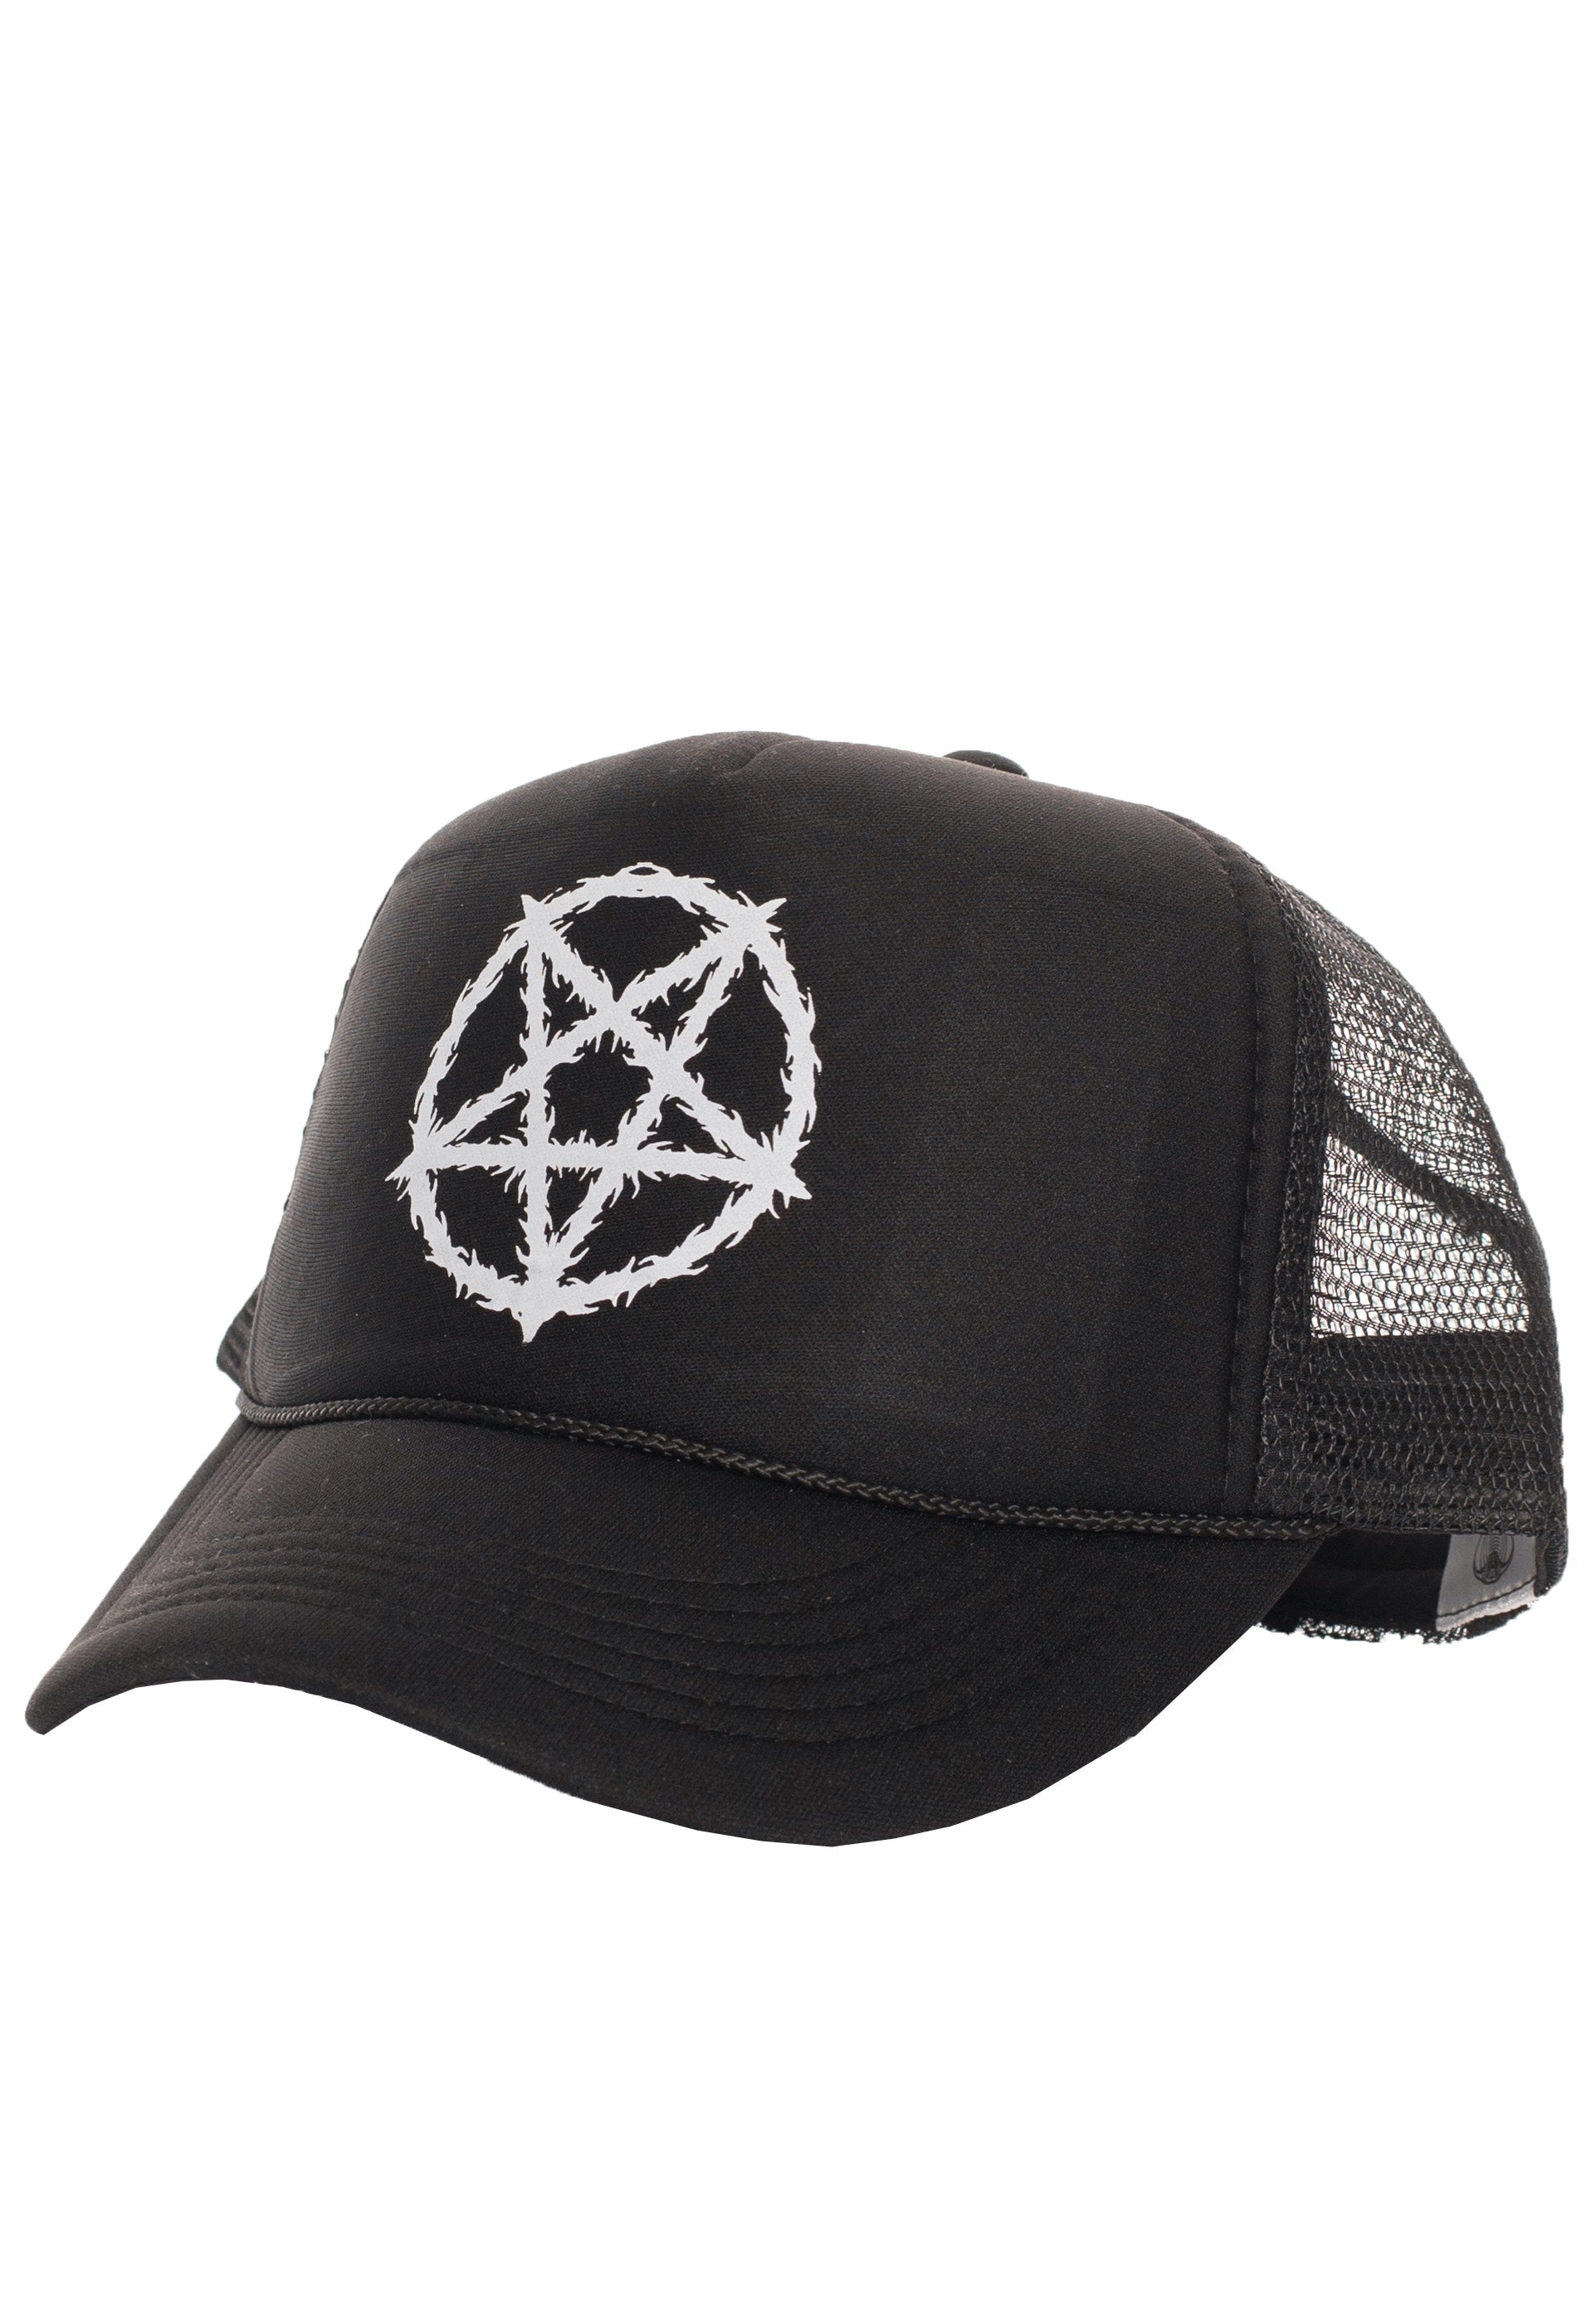 Too Fast - Metal Pentagram Black - Cap | Neutral-Image